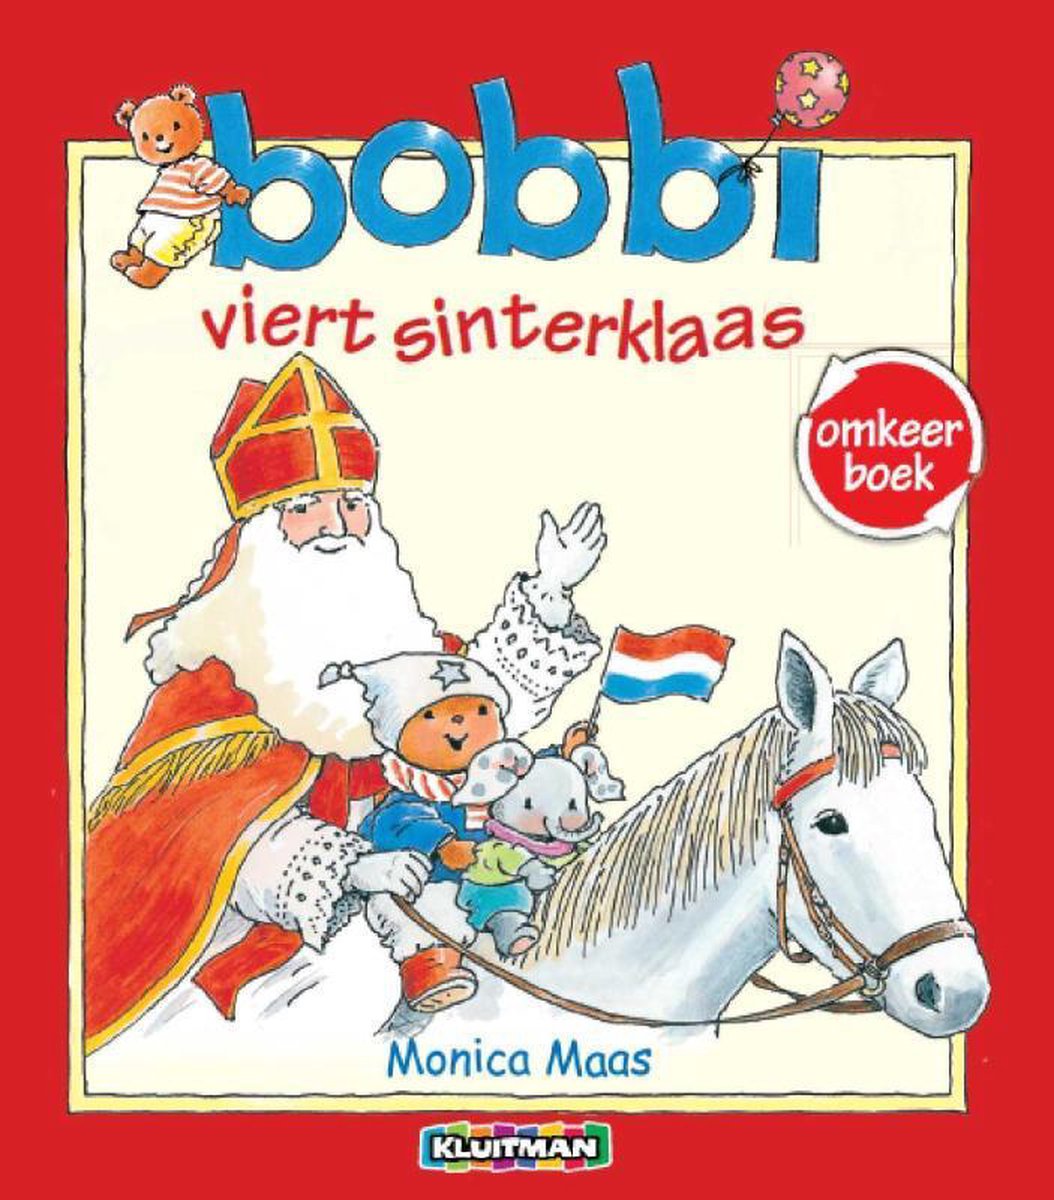 Divers Bobbi Omkeerboek: Sinterklaas / Kerst